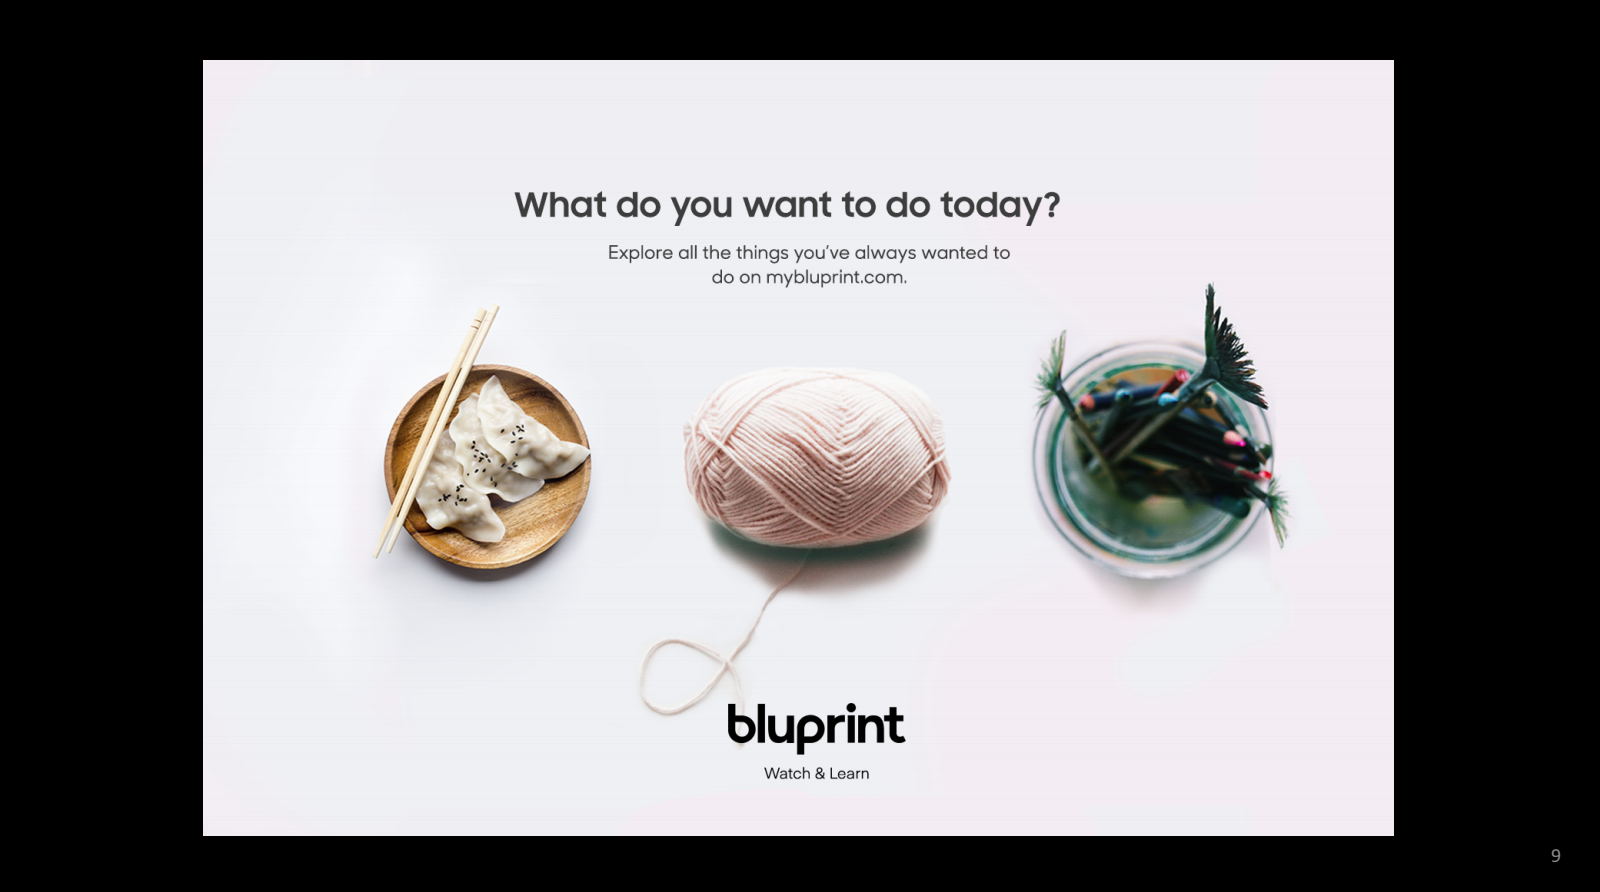 bluprint ad